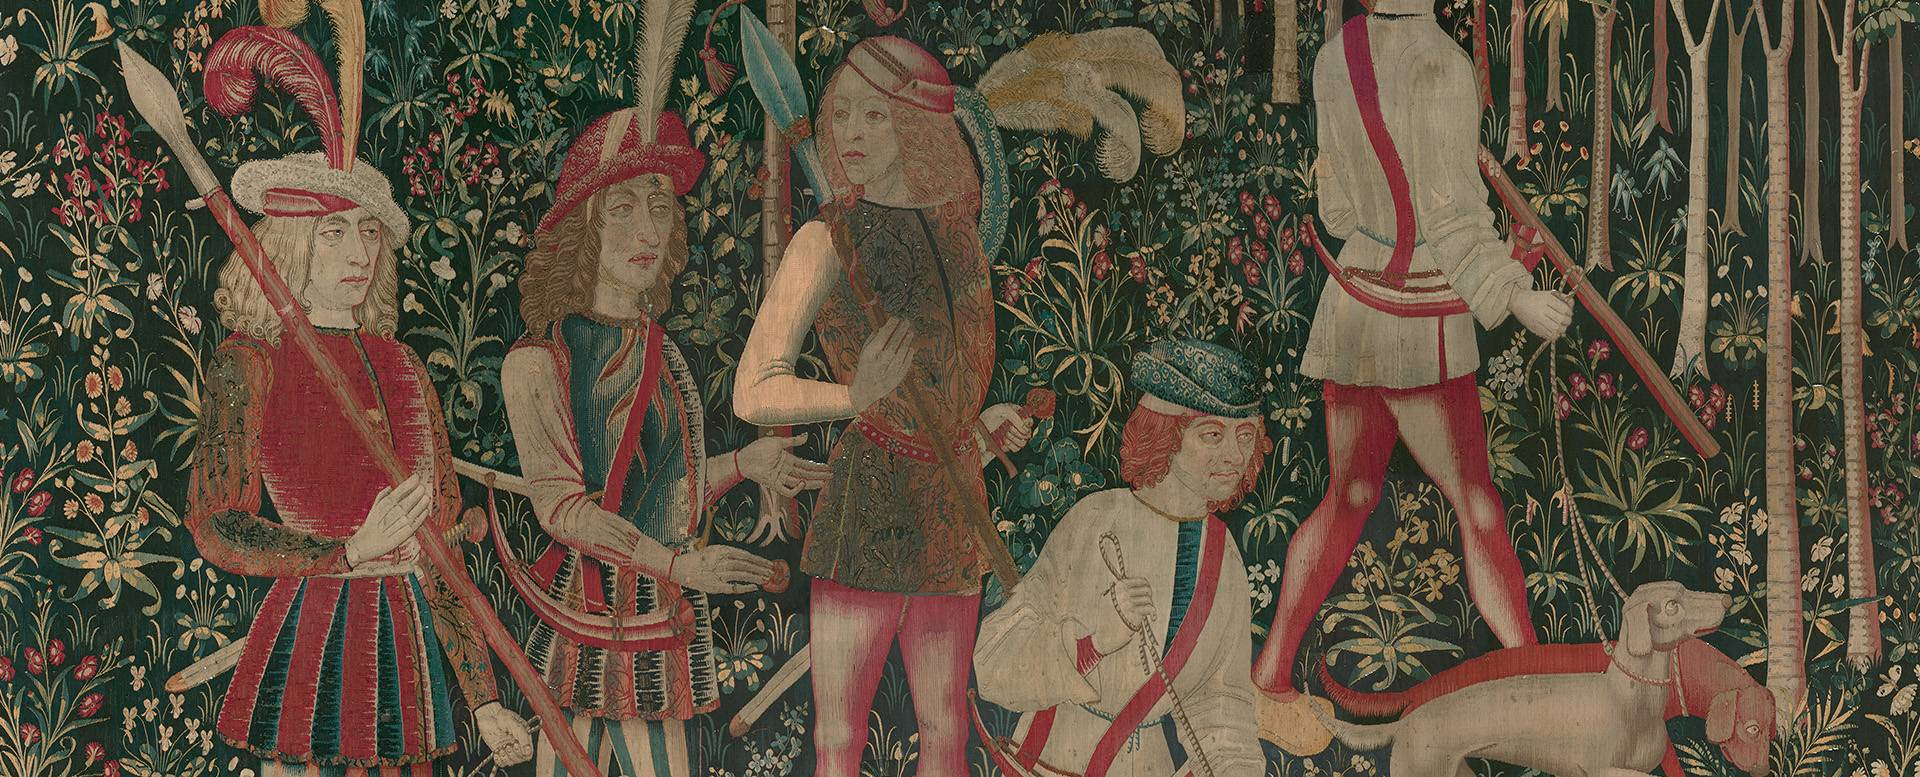 Detalhe de uma tapeçaria que é uma das sete cortinas do Claustro que retratam a caça ao unicórnio, uma criatura mítica mencionada pela primeira vez pelo médico grego Ctesias no século IV a.C.